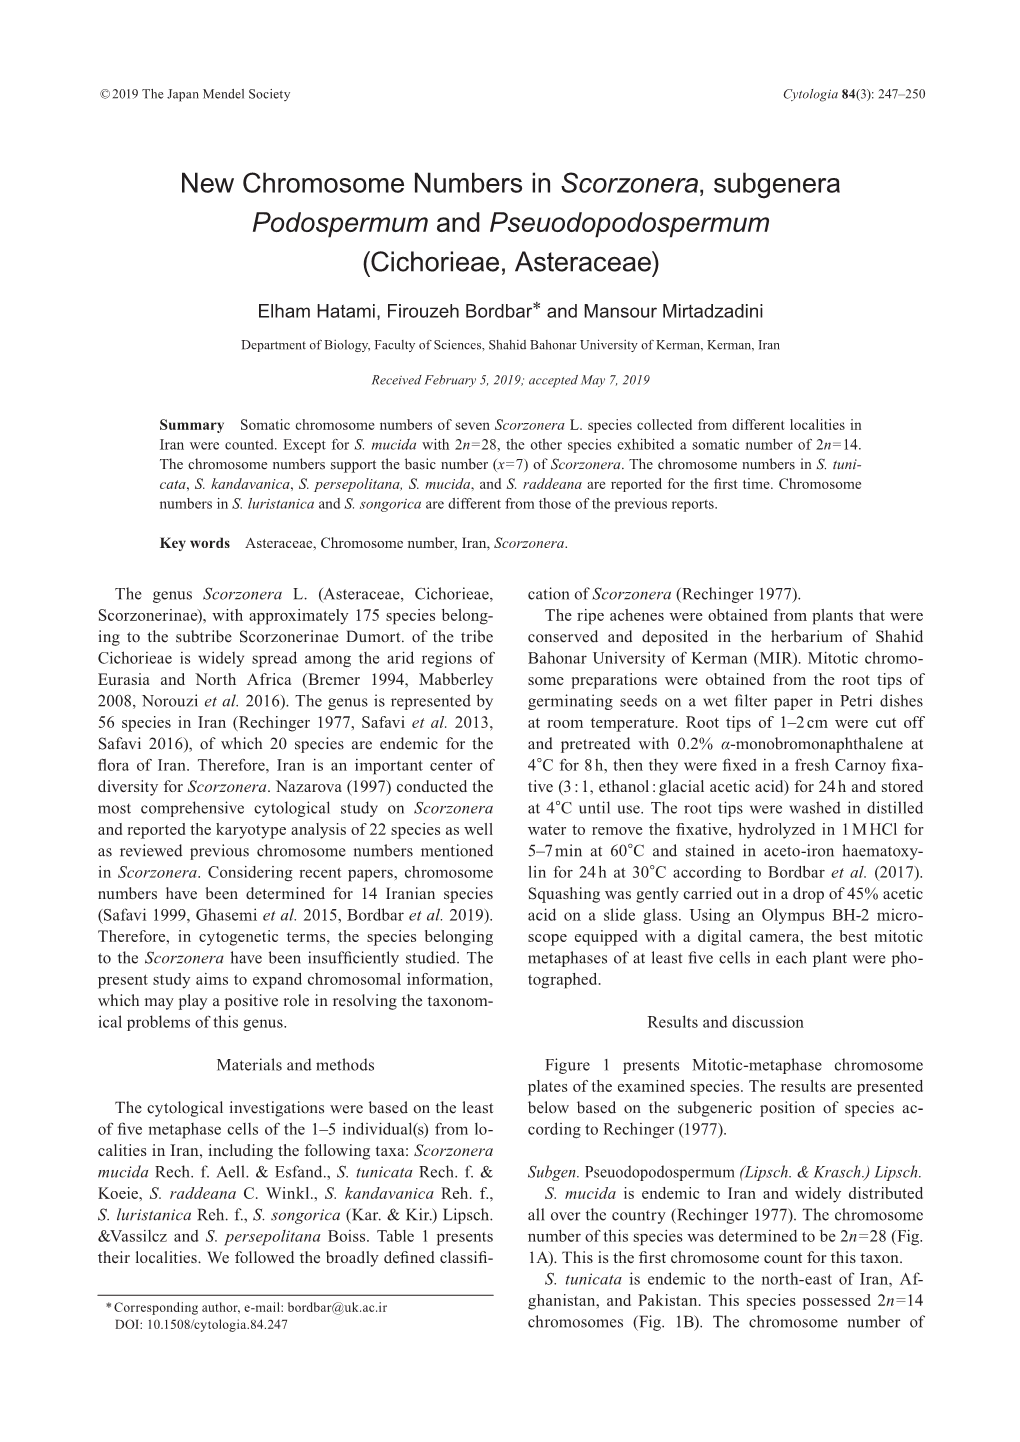 New Chromosome Numbers in Scorzonera, Subgenera Podospermum and Pseuodopodospermum (Cichorieae, Asteraceae)